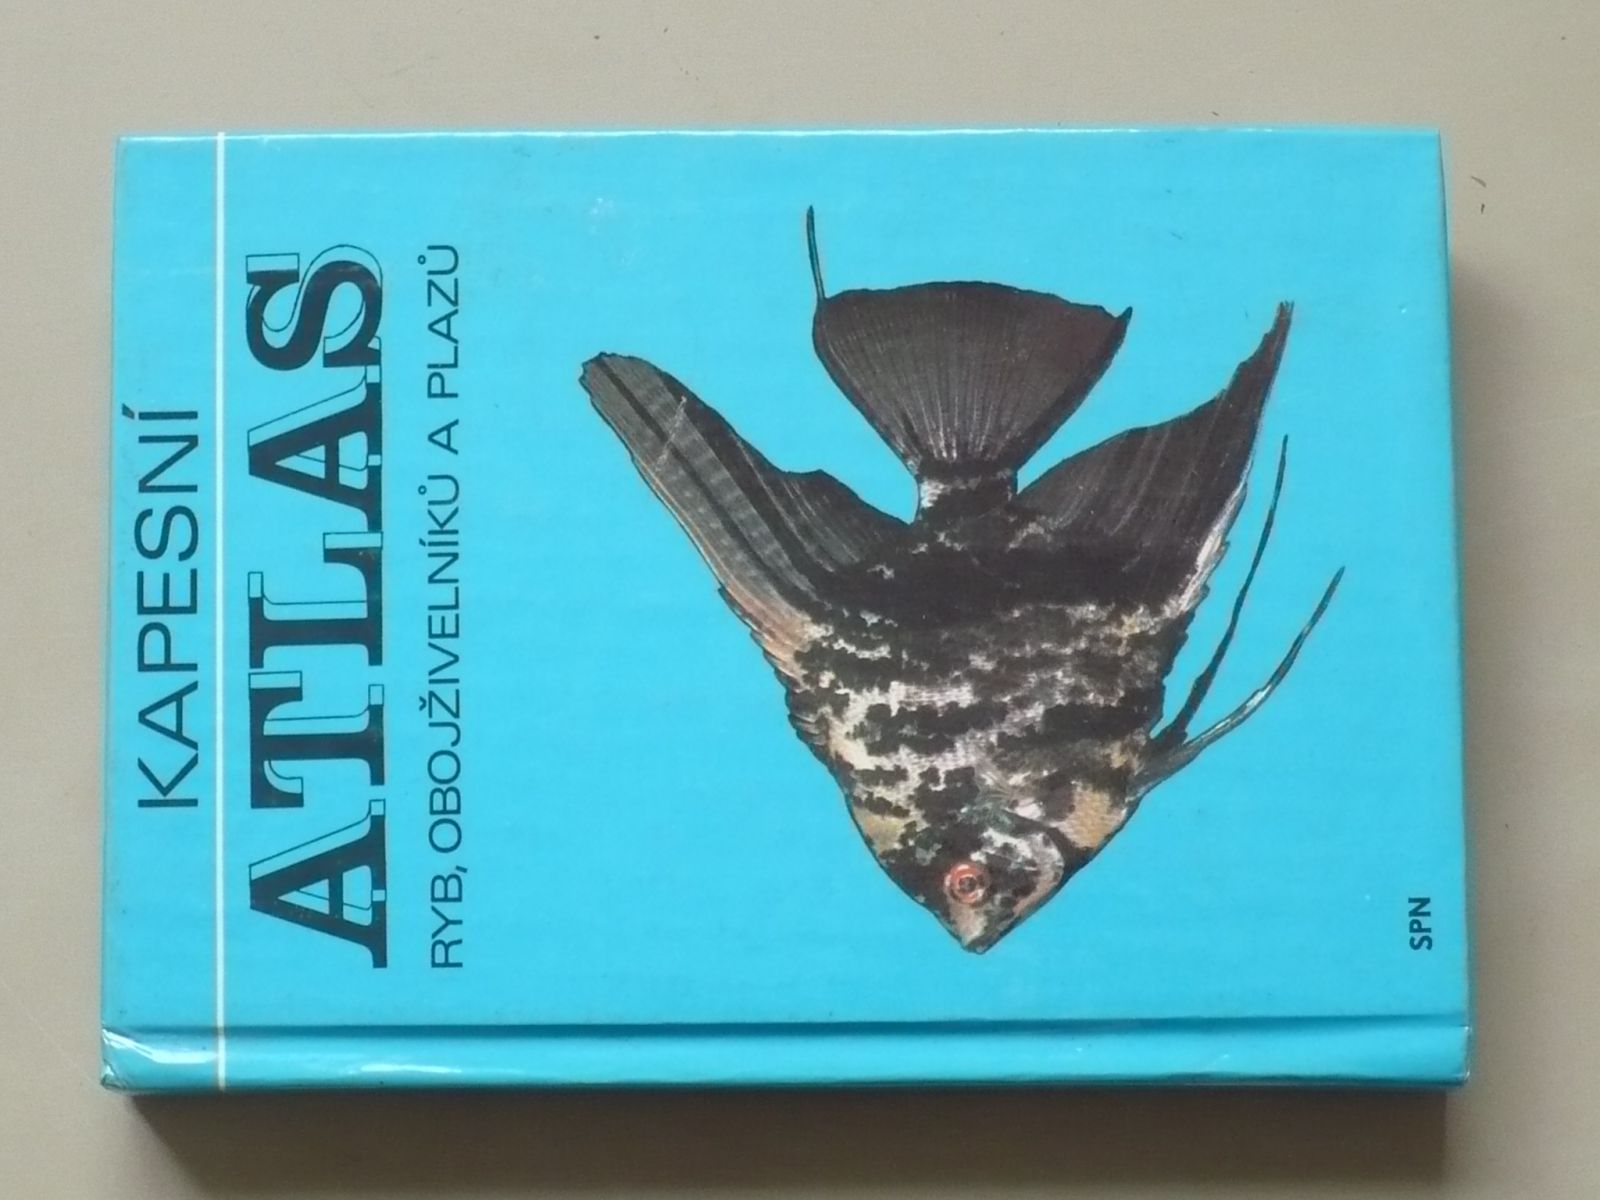 Otakar Štěpánek - Kapesní atlas ryb, obojživelníků a plazů (1987)